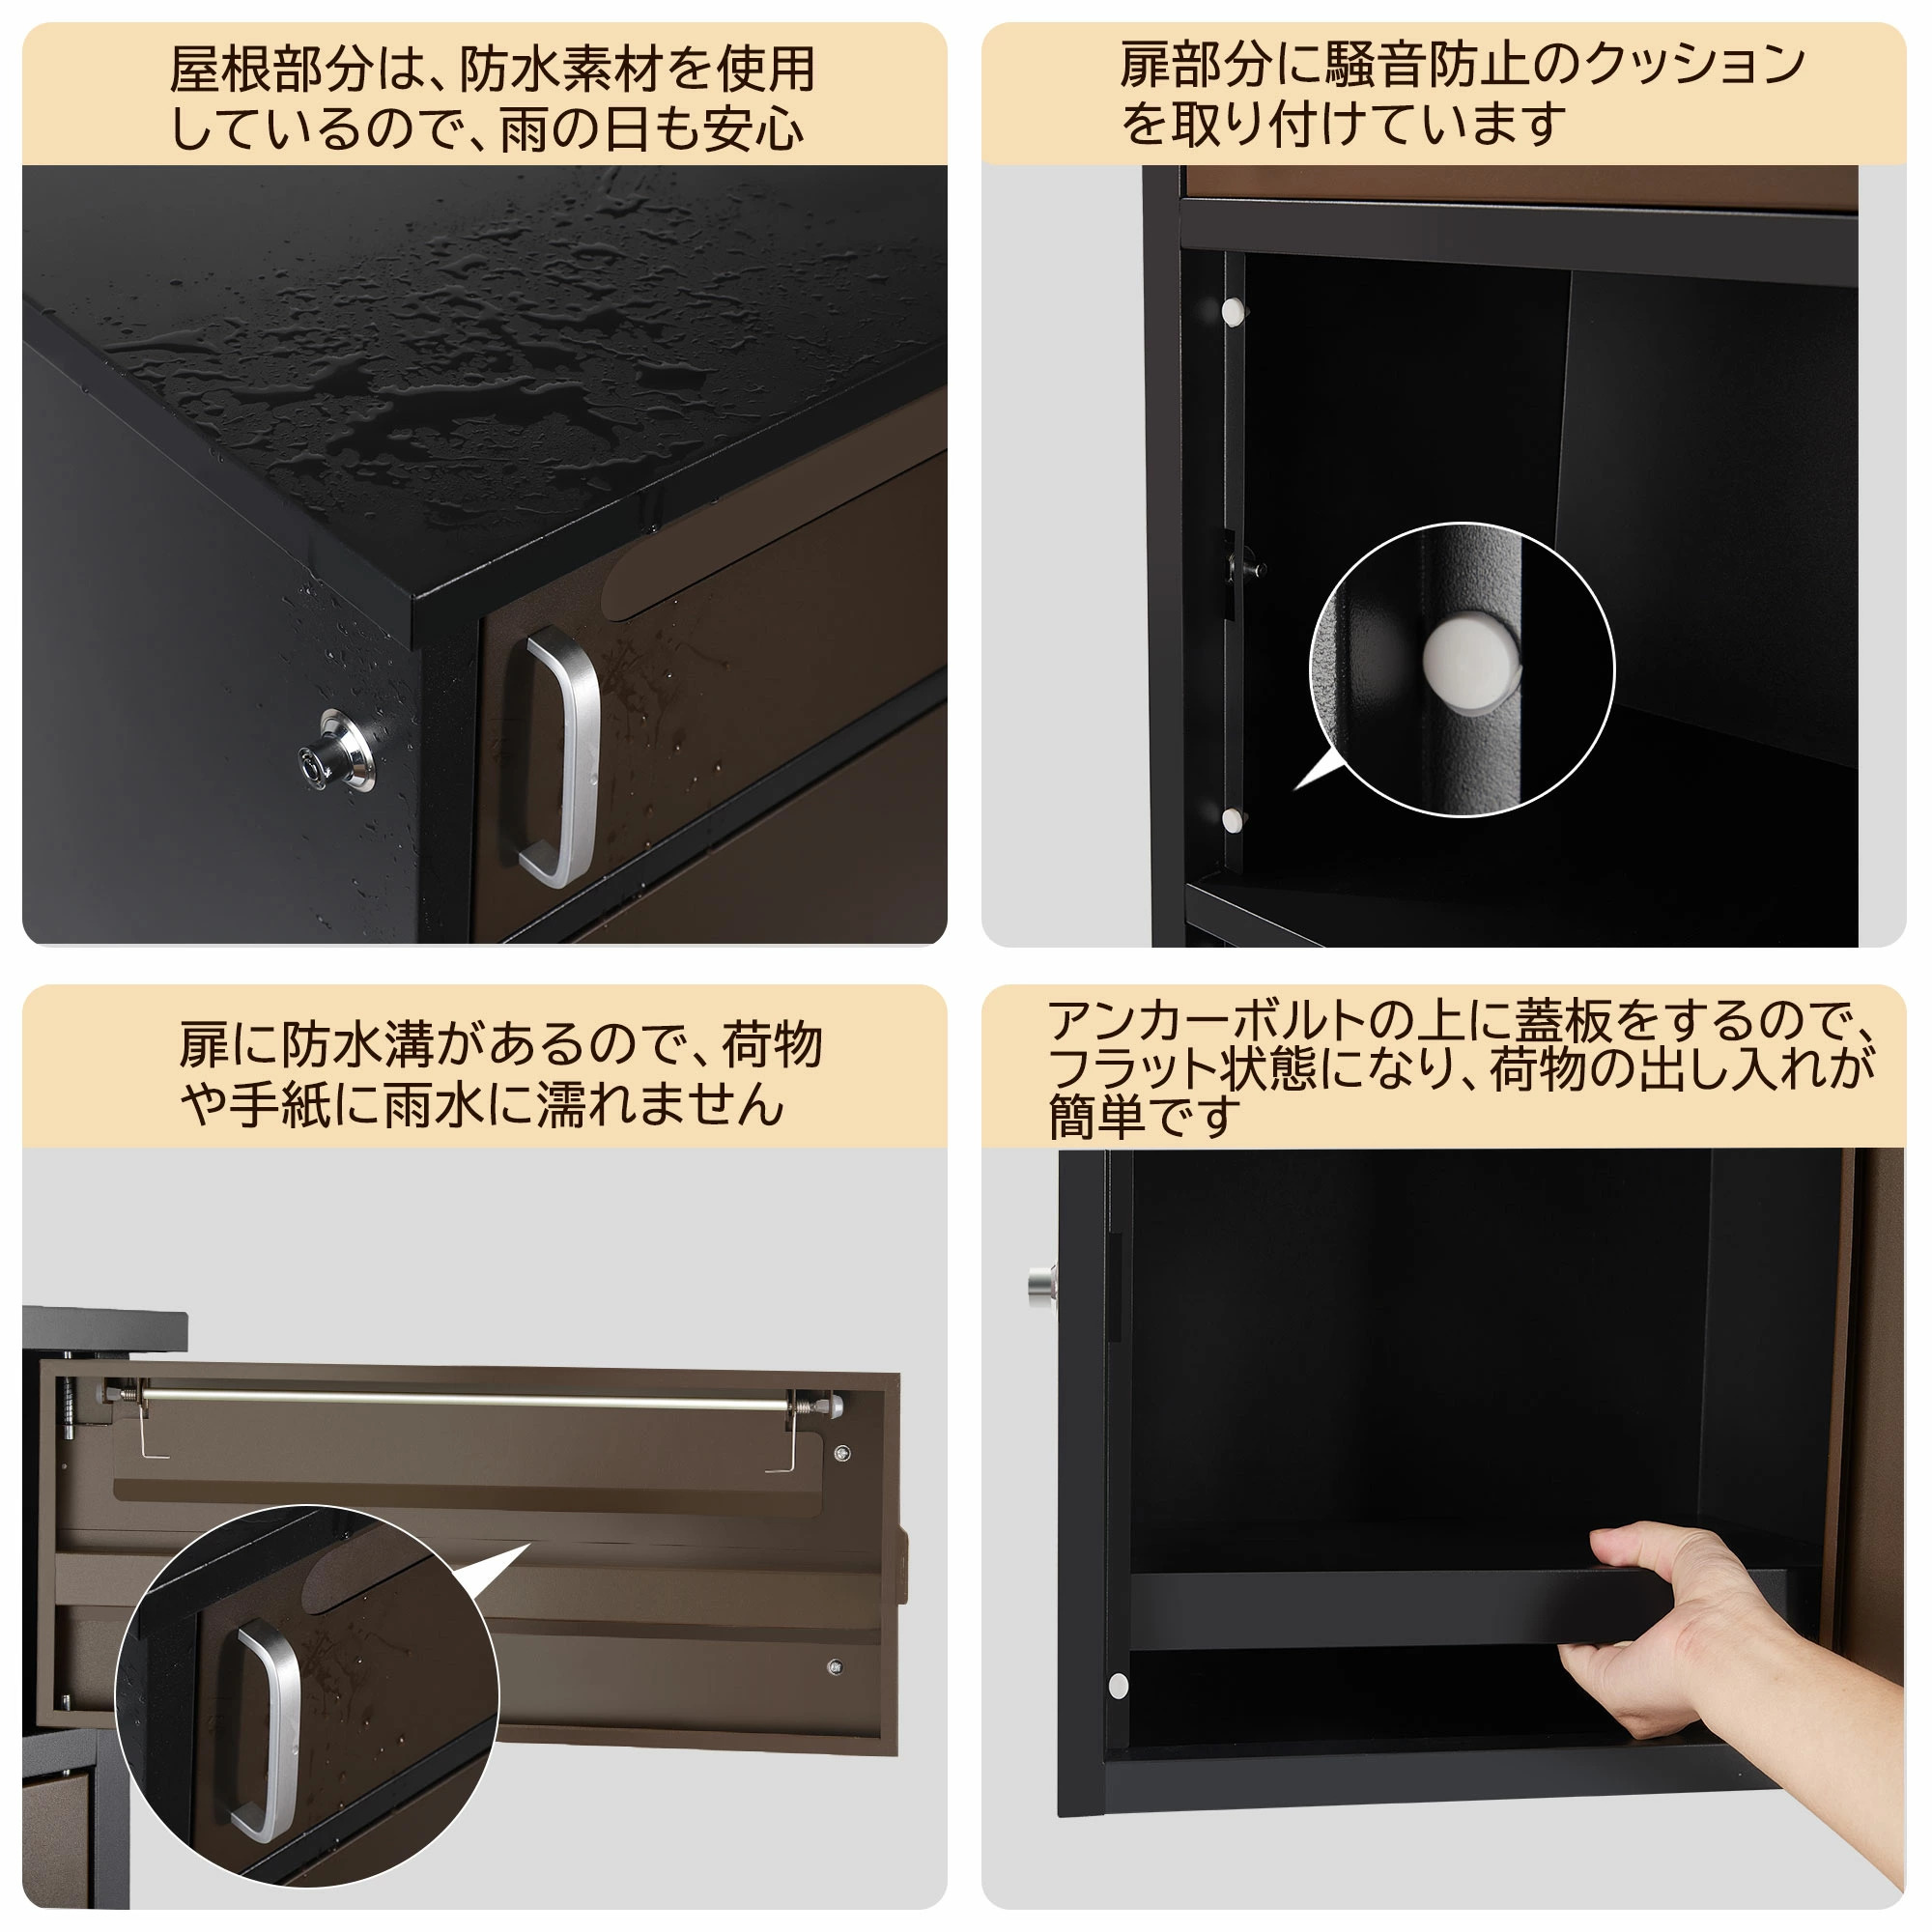 日本機器通販 / (組立完成品) TOOLS LIFE 宅配ボックス(中)THBOX-2-1